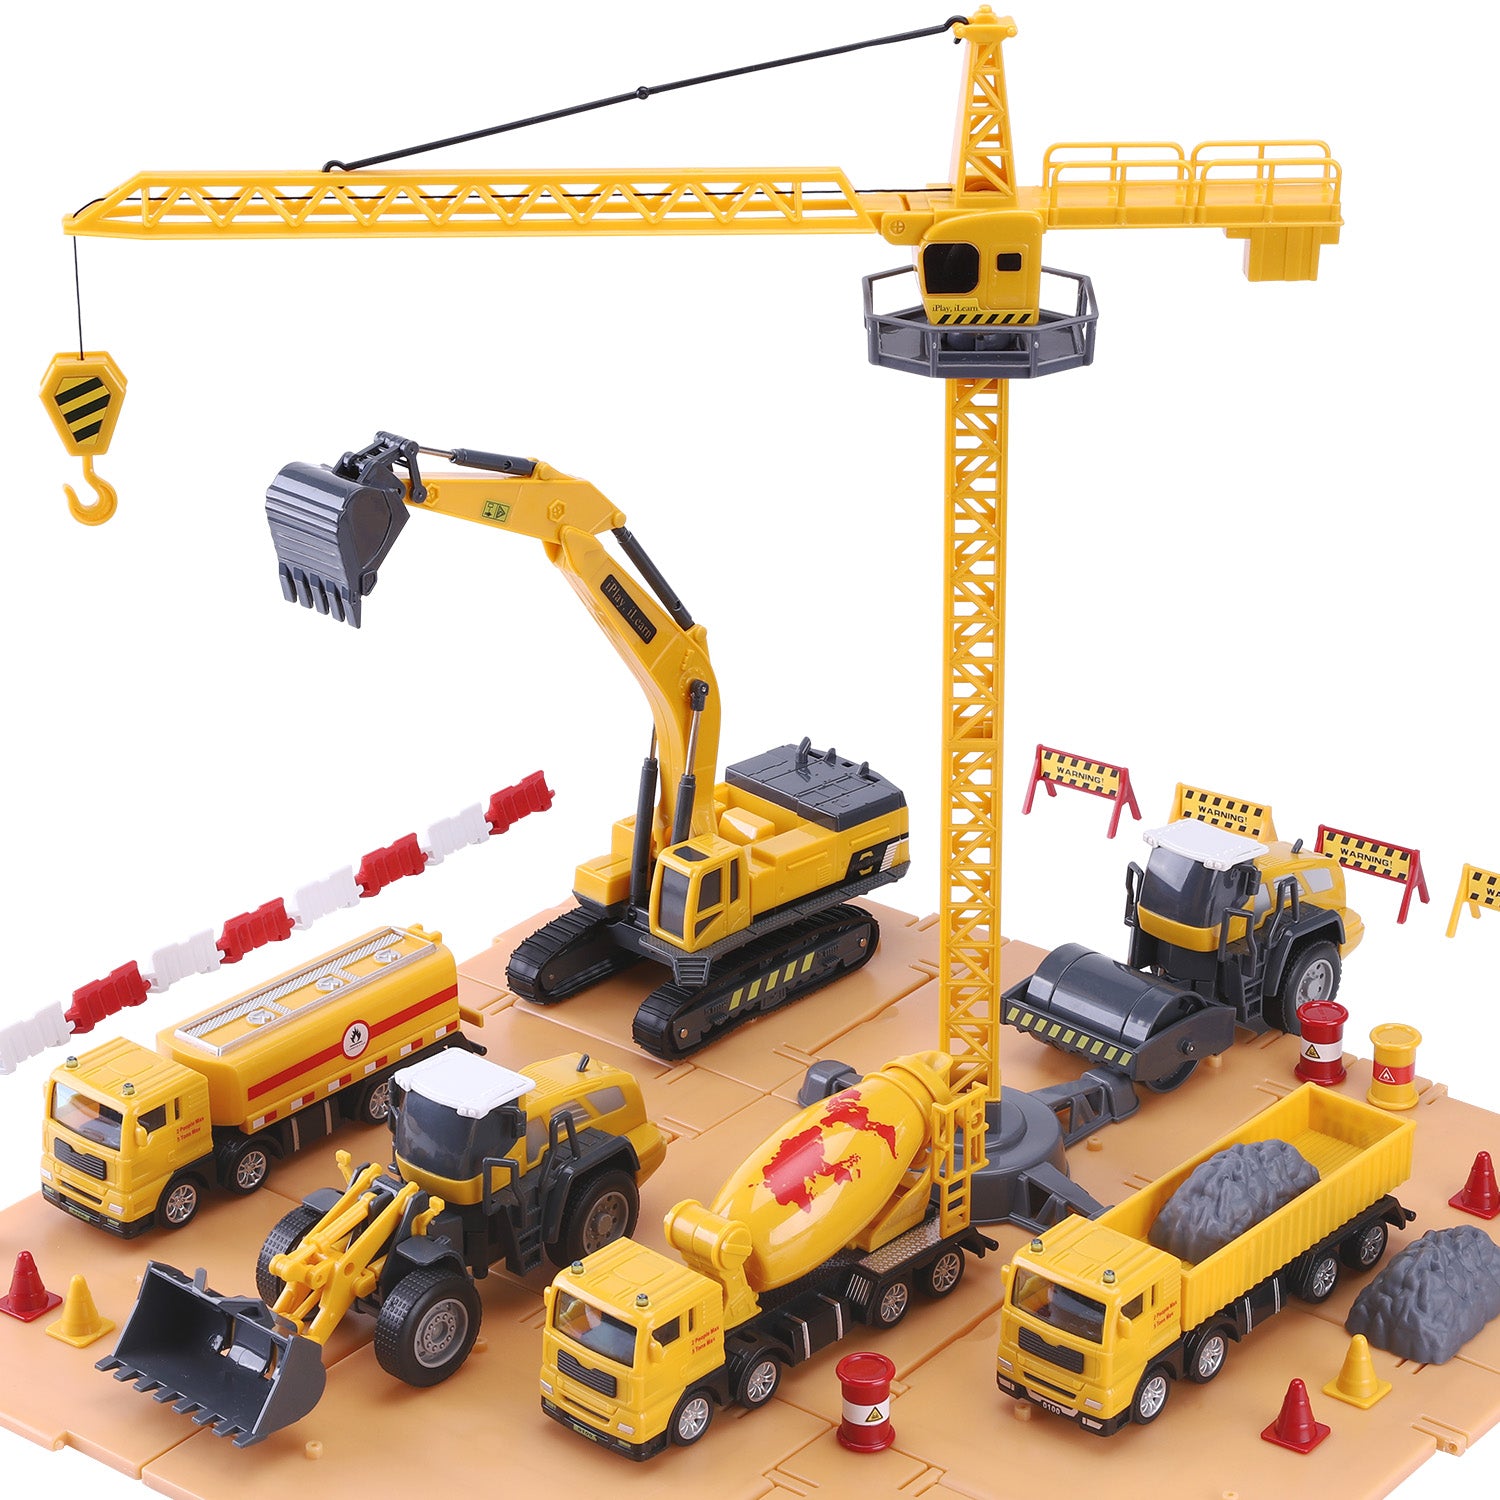 iPlay, iLearn Kids Construction Toys Truck Set